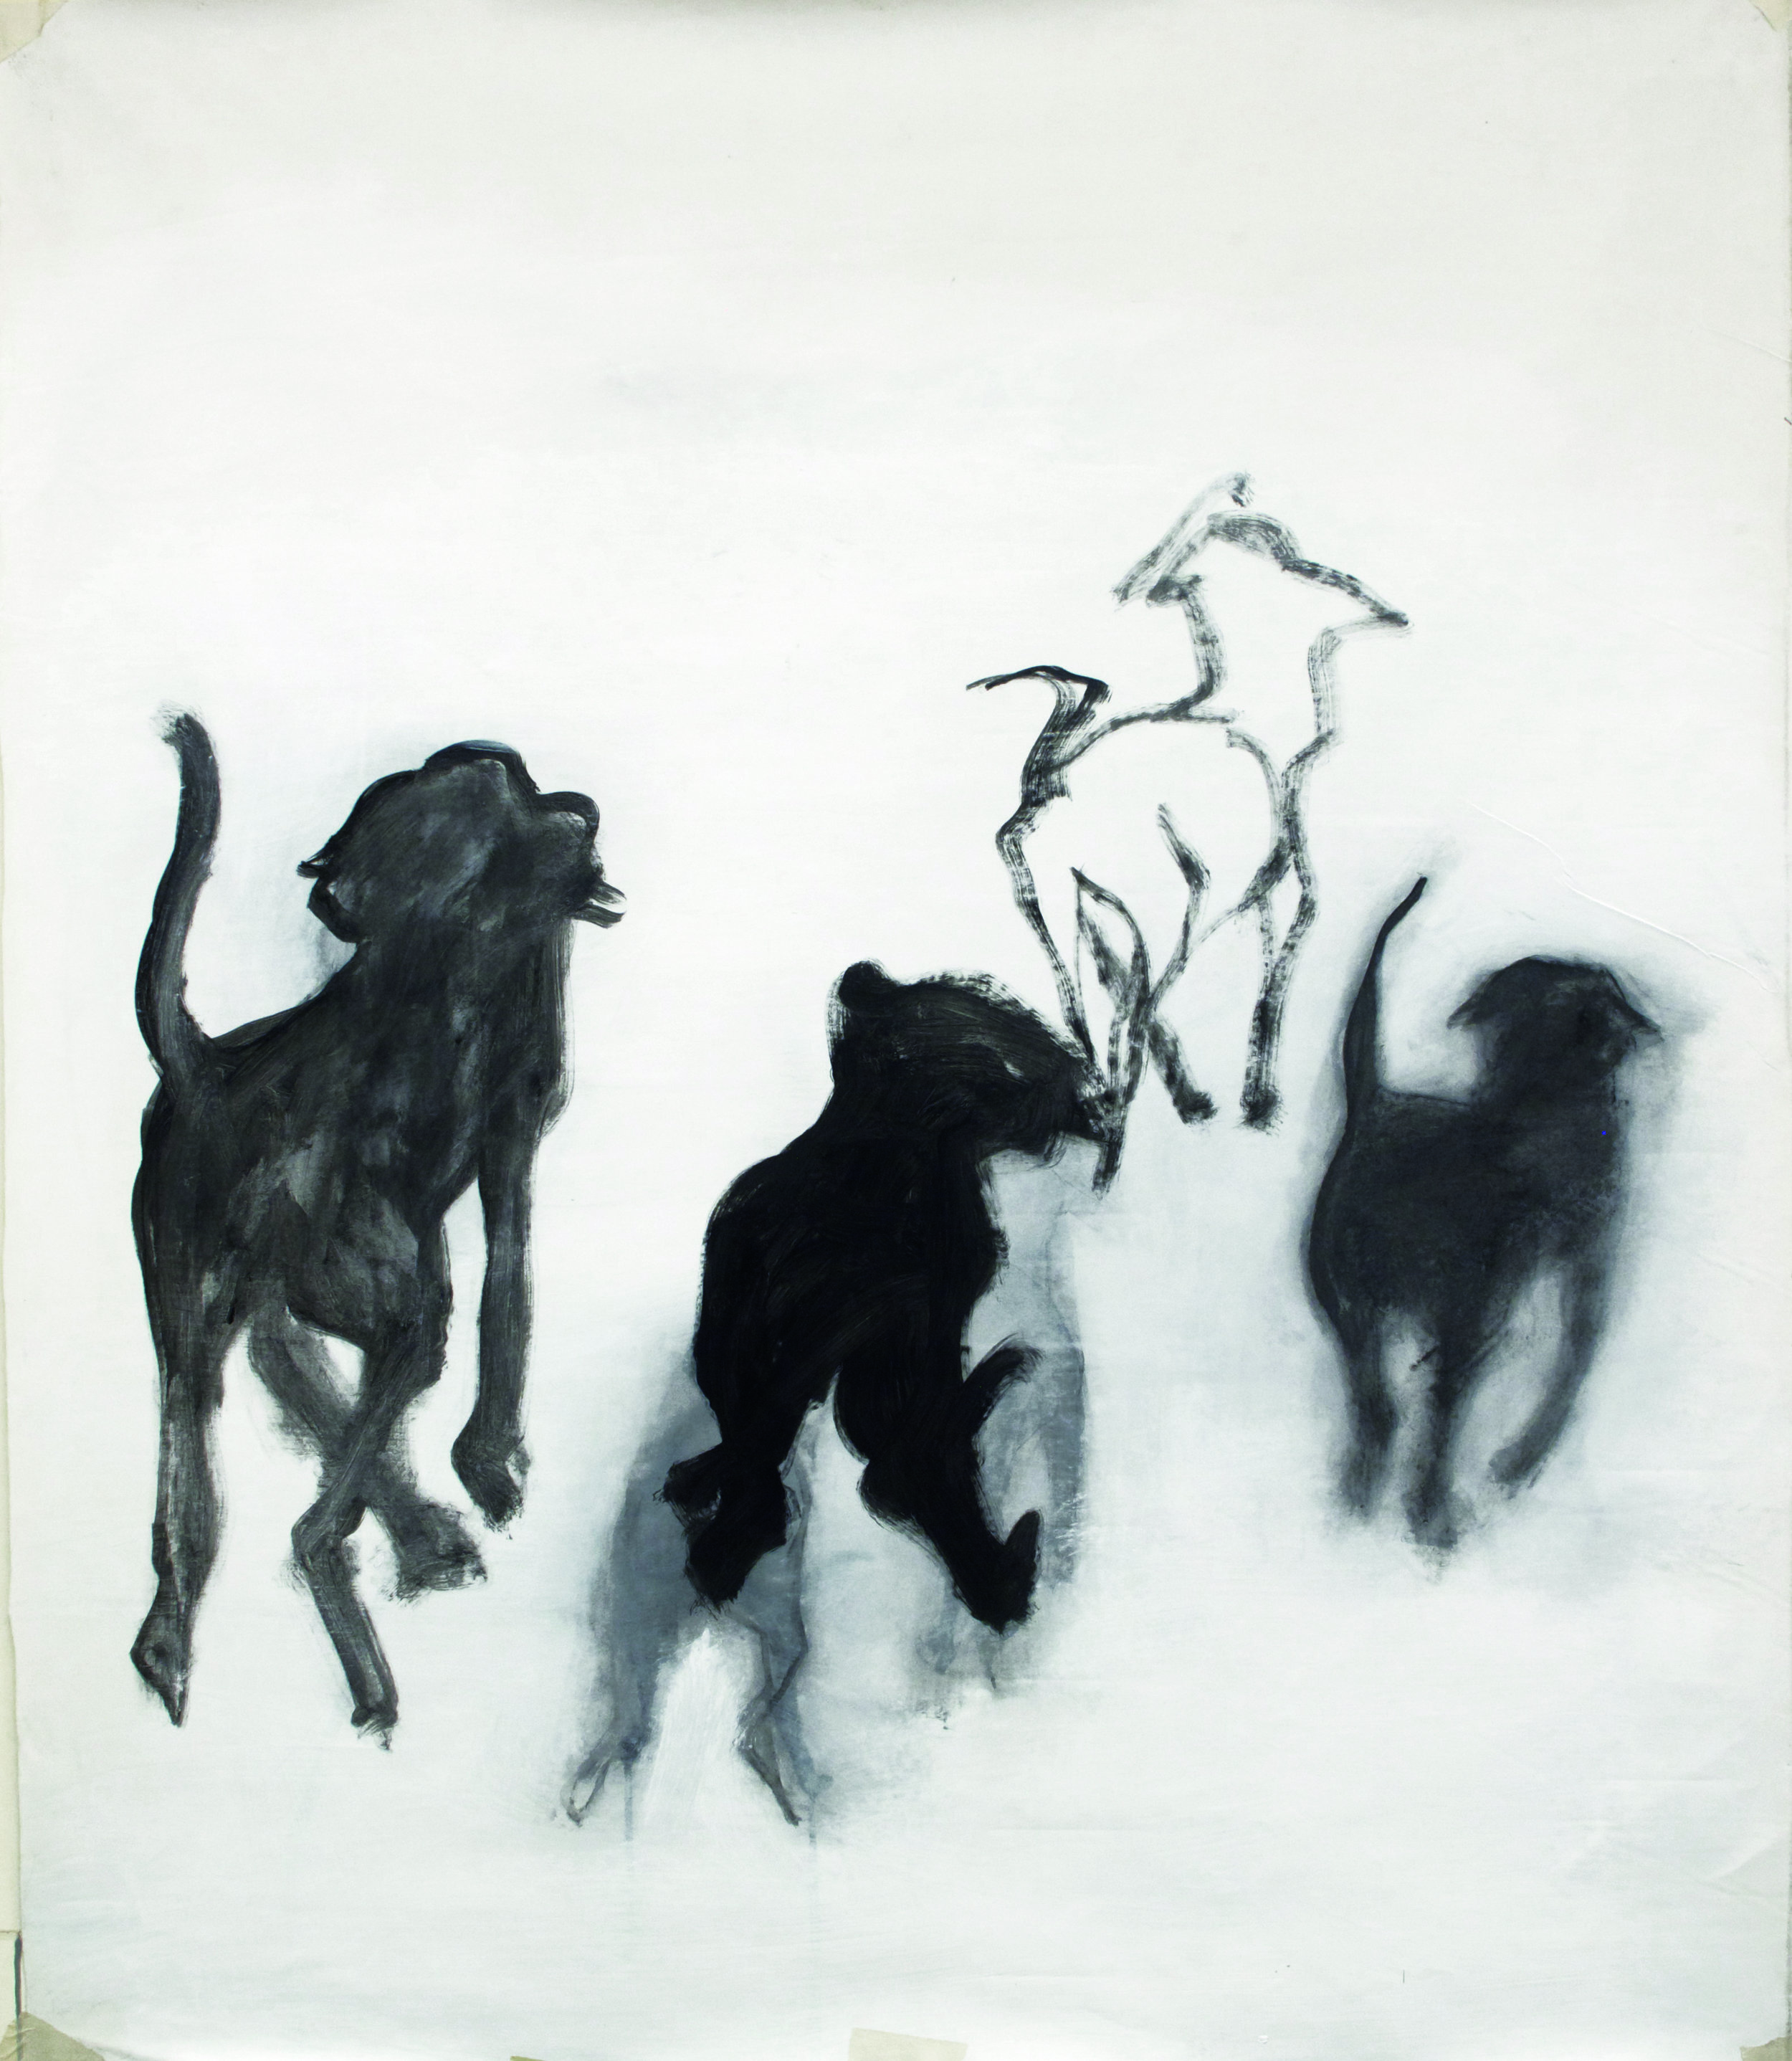  Dogs, 2013, acrylic on canvas, 90 x 60 cm 